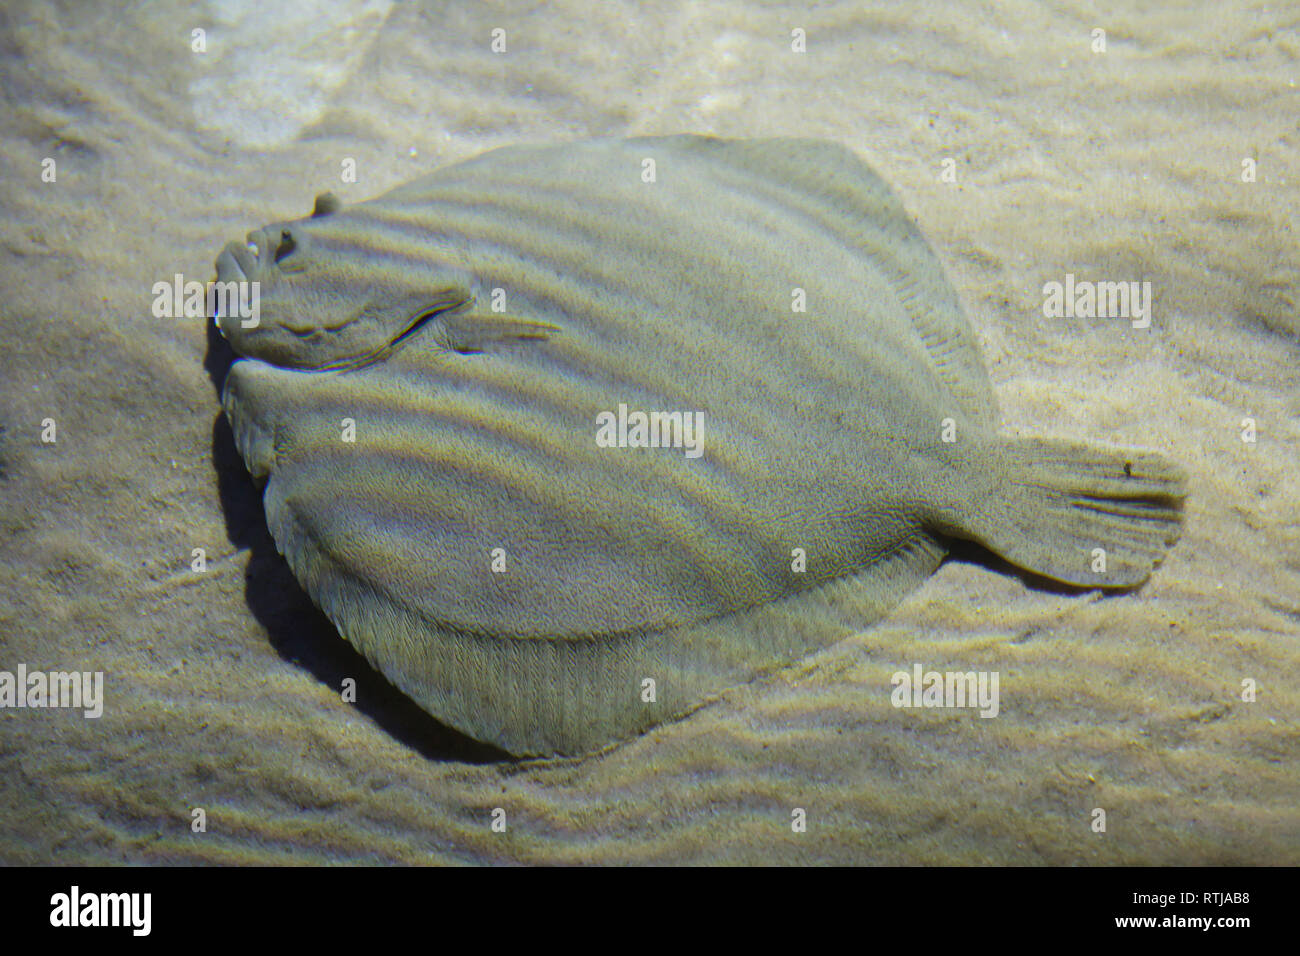 Brill (Scophthalmus rhombus). Marine Plattfisch. Stockfoto